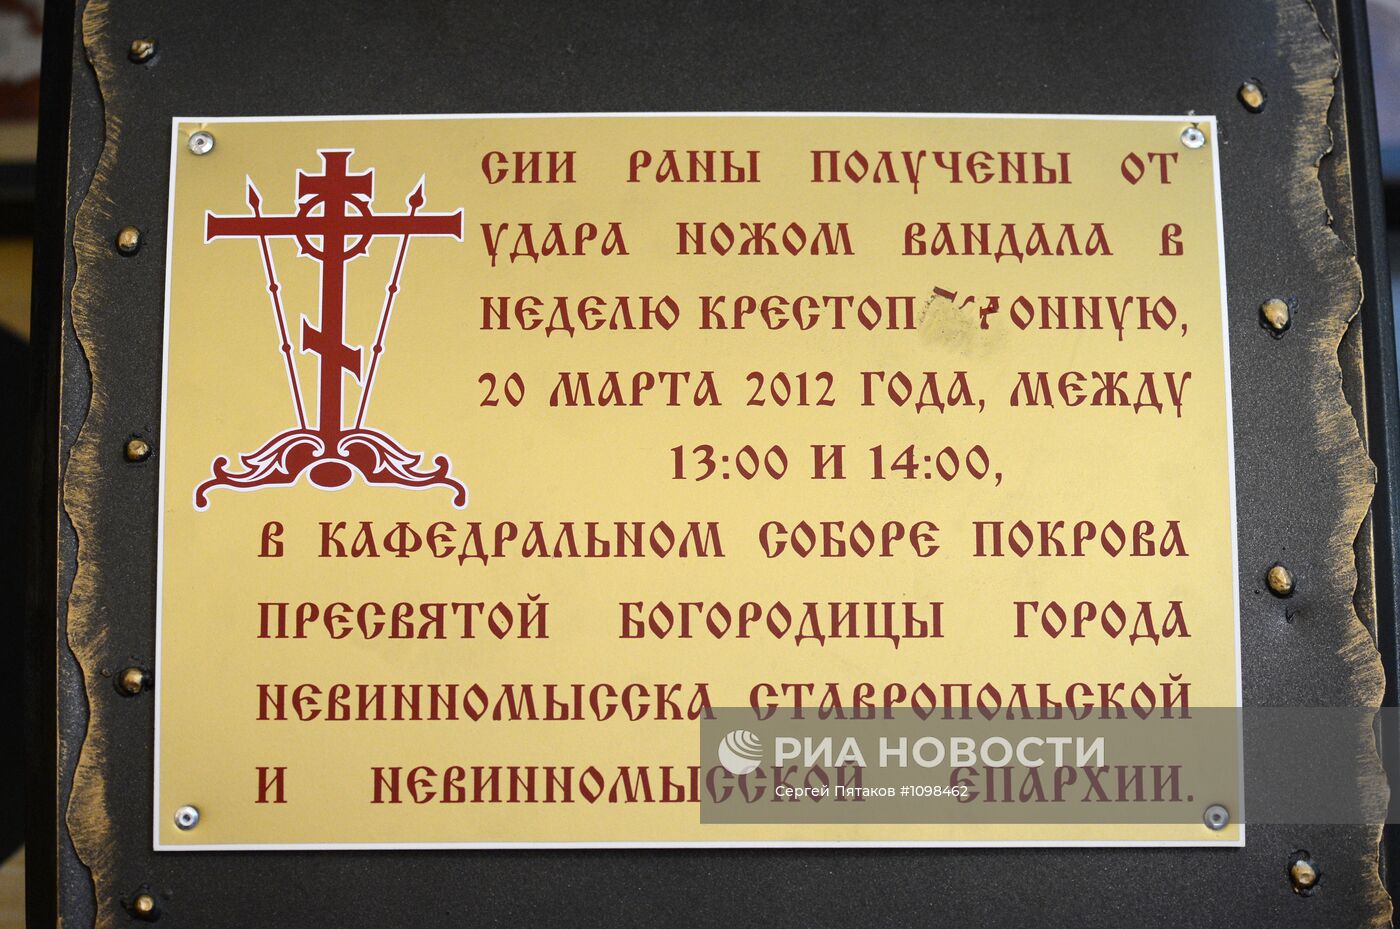 Поруганные святыни из Невинномысска и Великого Устюга в Москве